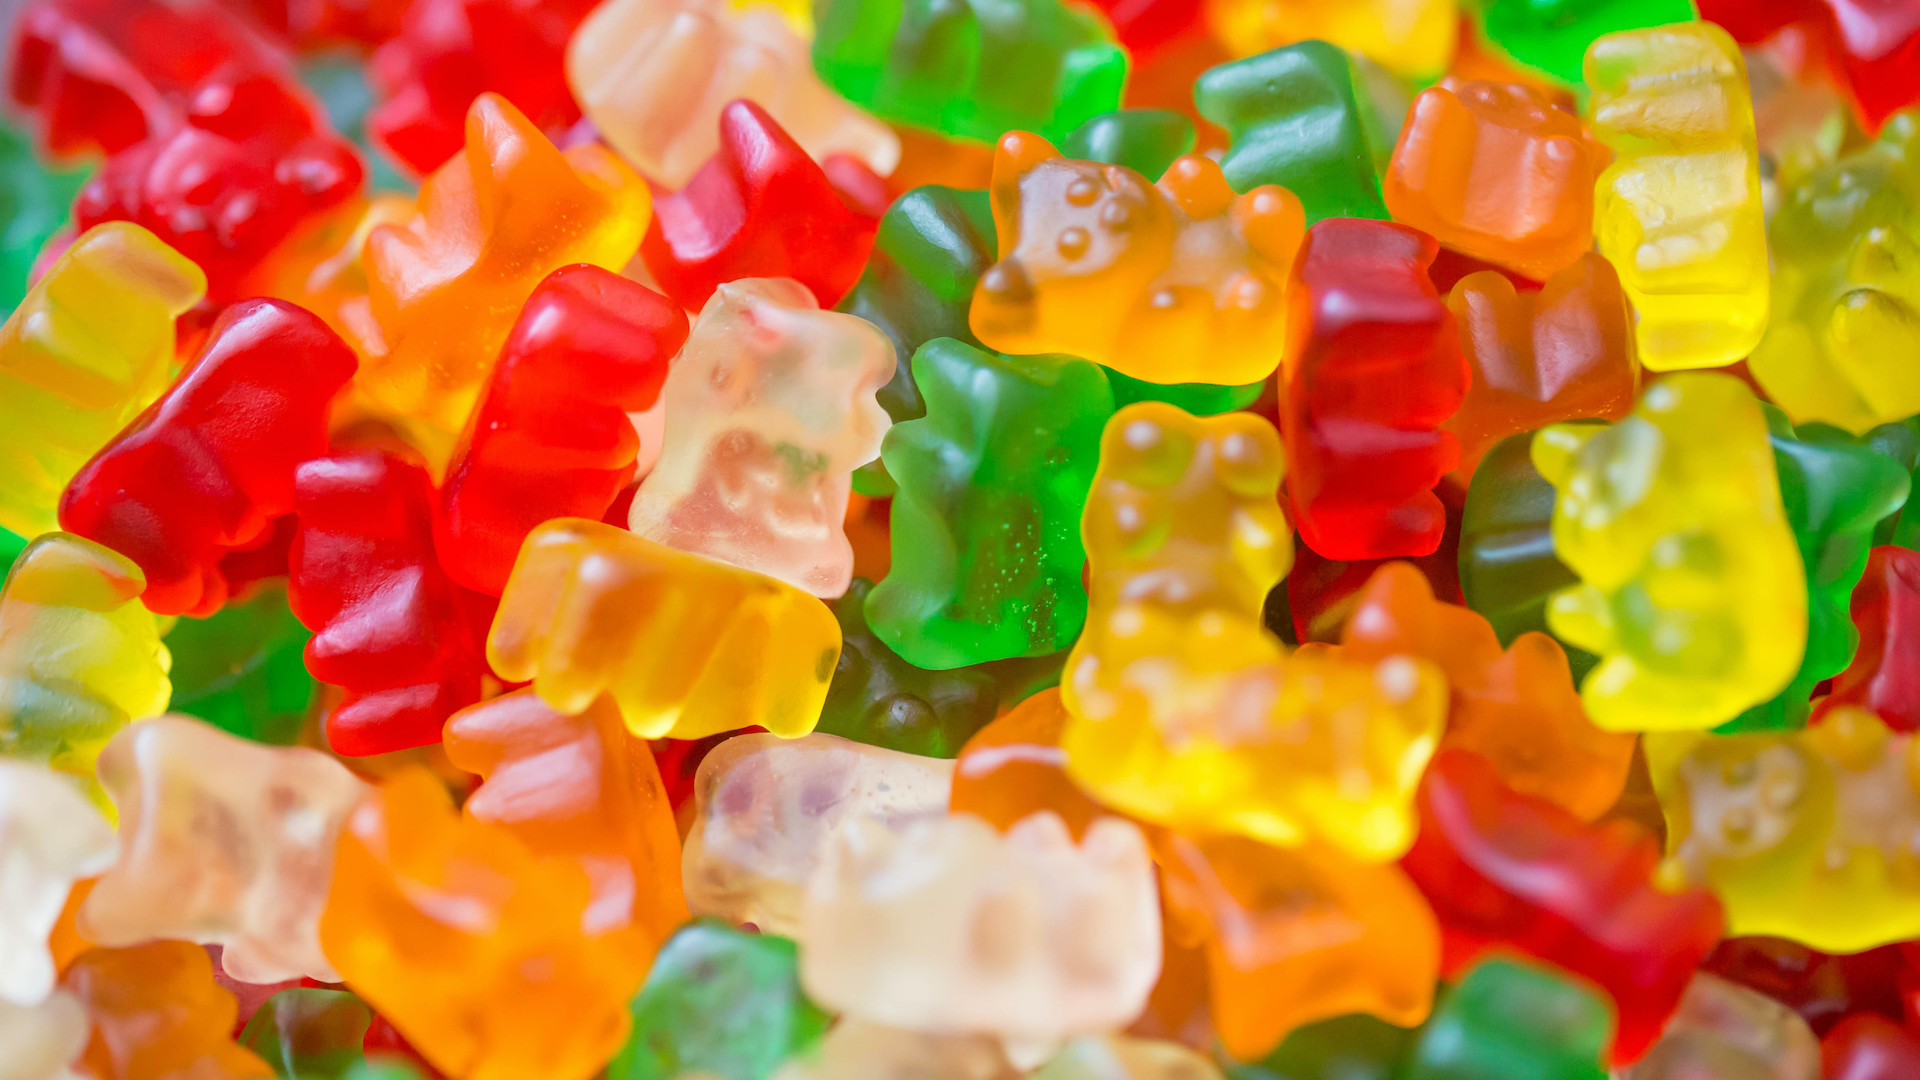 A pile of gummy bears